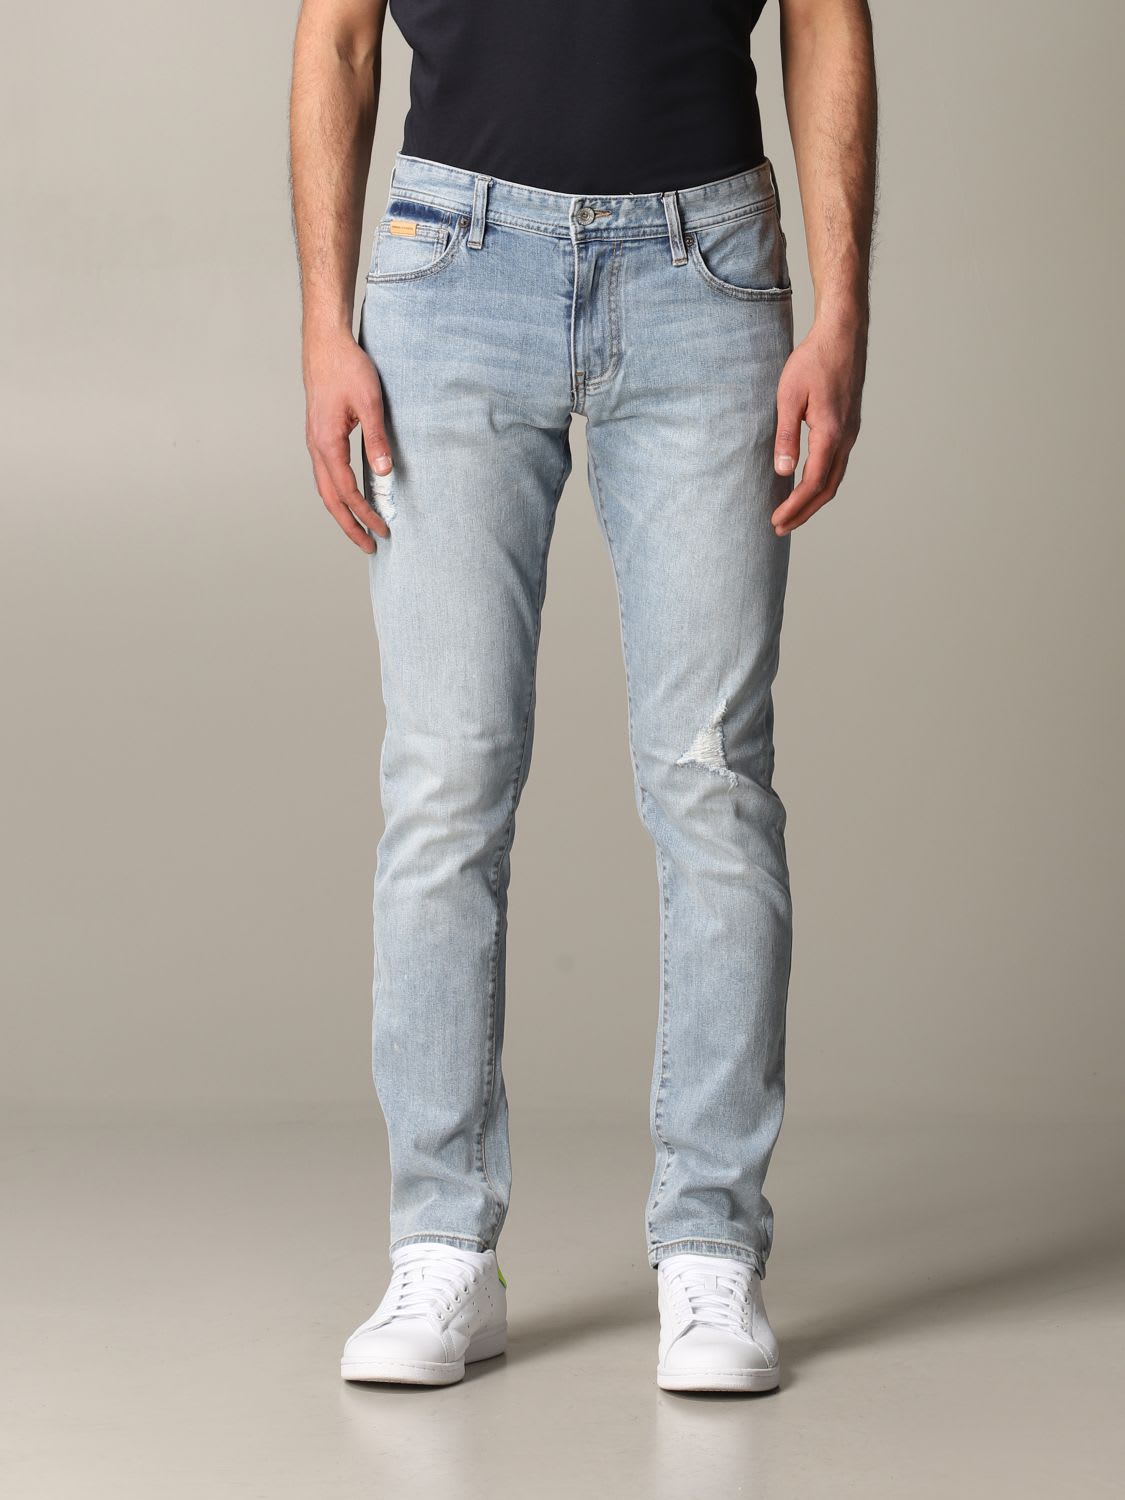 armani jeans website